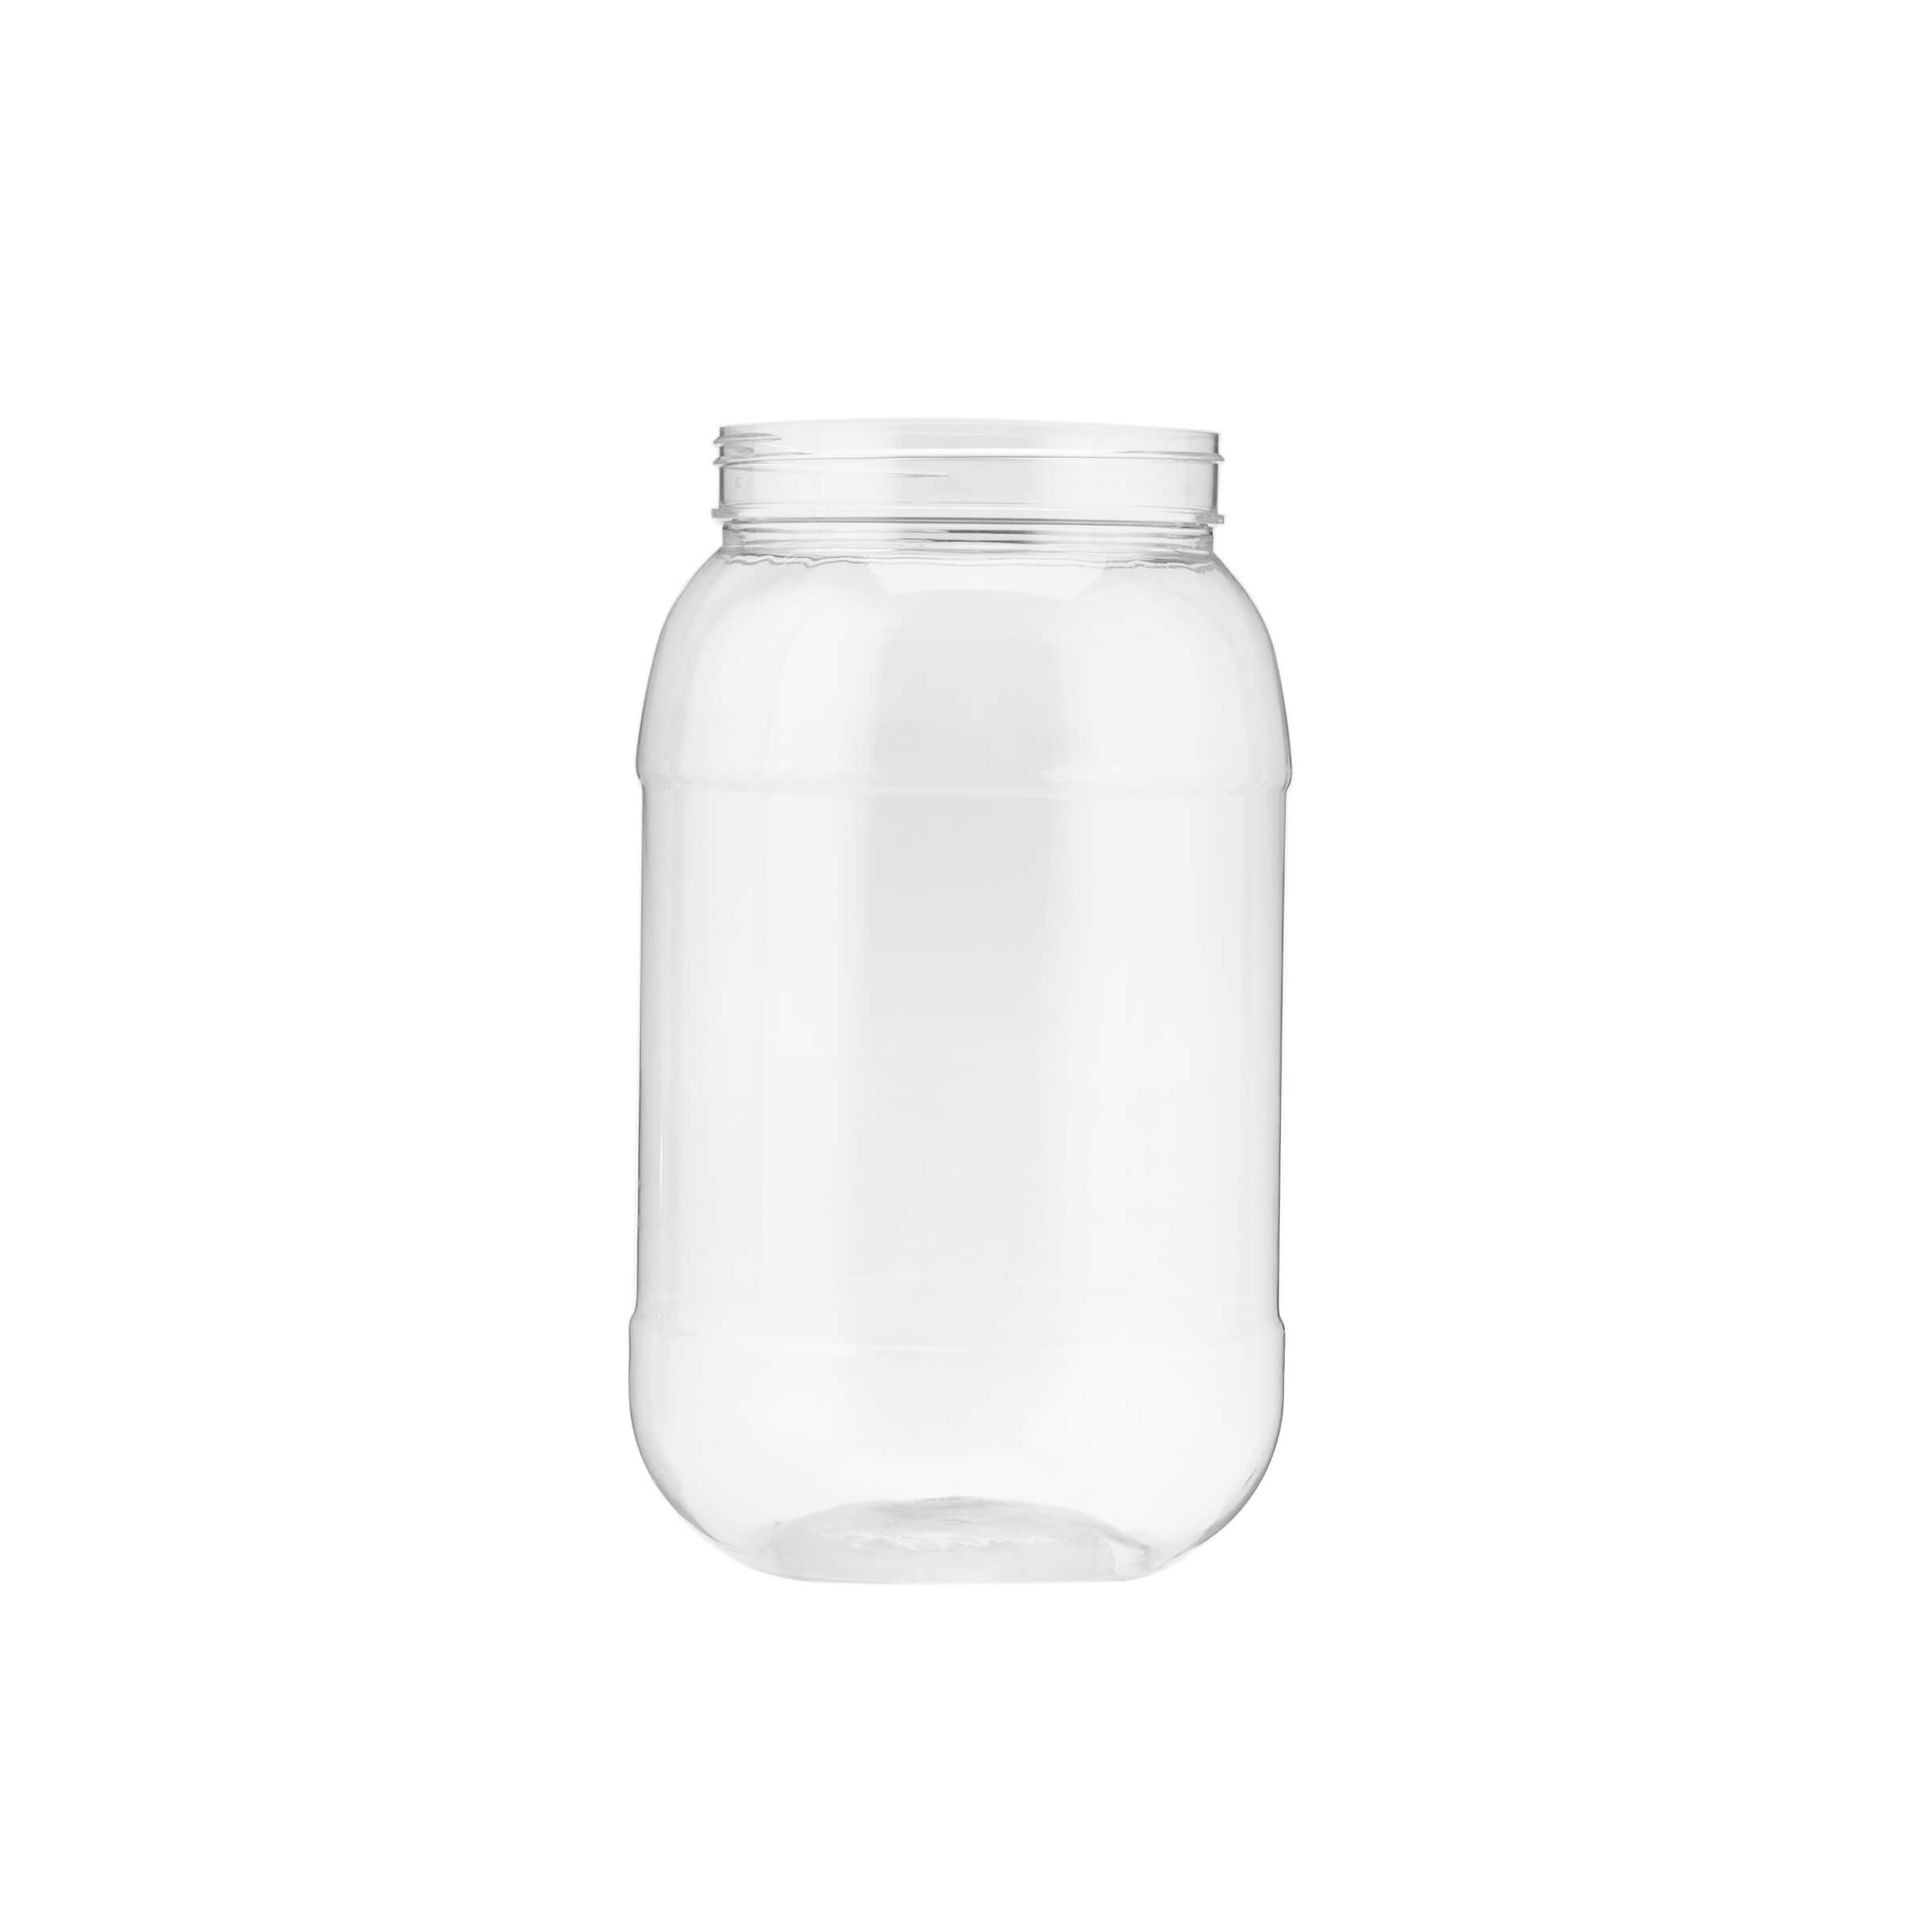 4000 ml Plastic Storage Jar With Lid - Hotpack Global